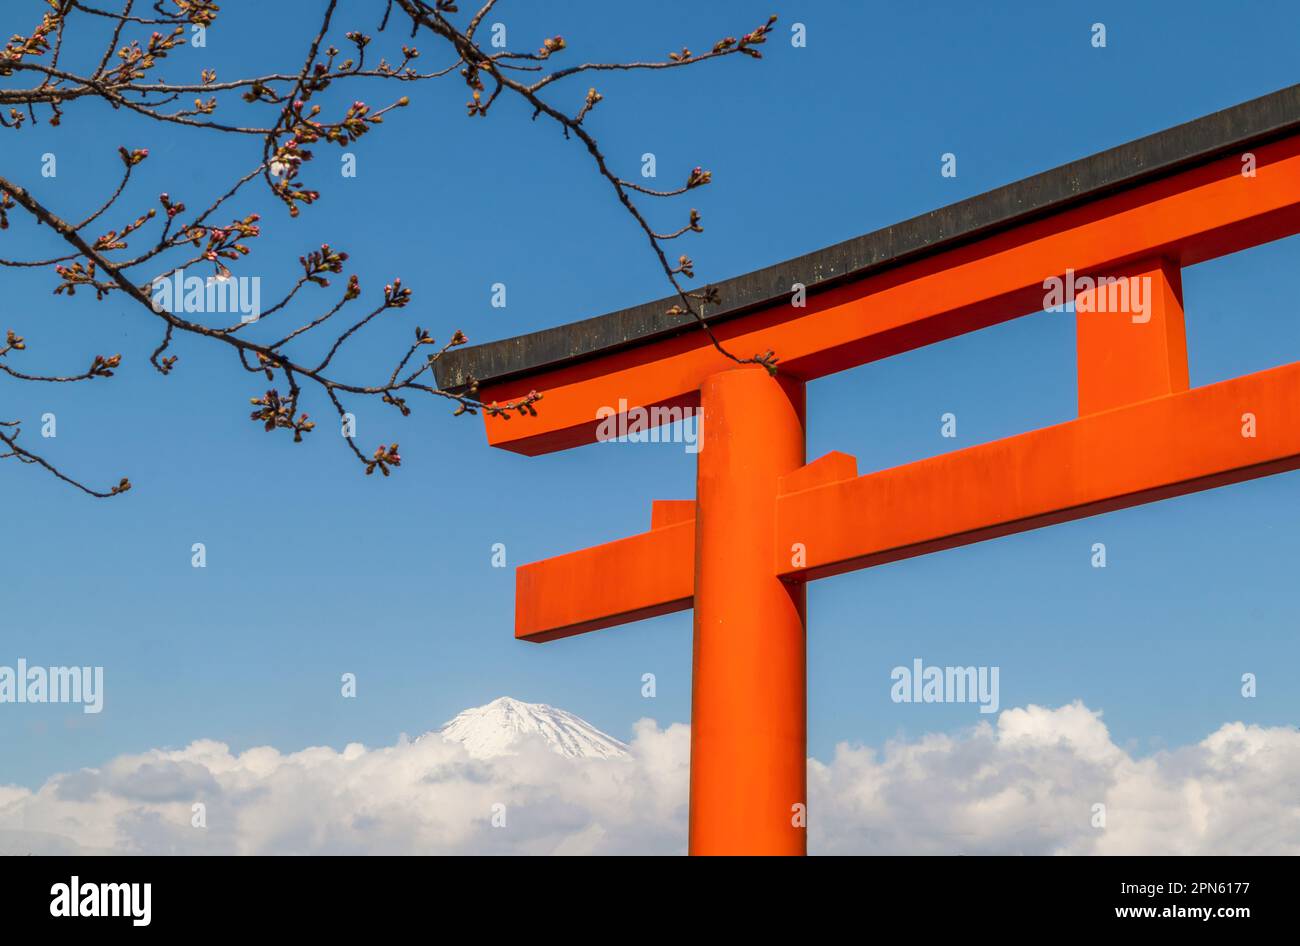 La parte superior de un torii rojo y una rama de Sakura con el monte Fuji nublado en el fondo Foto de stock